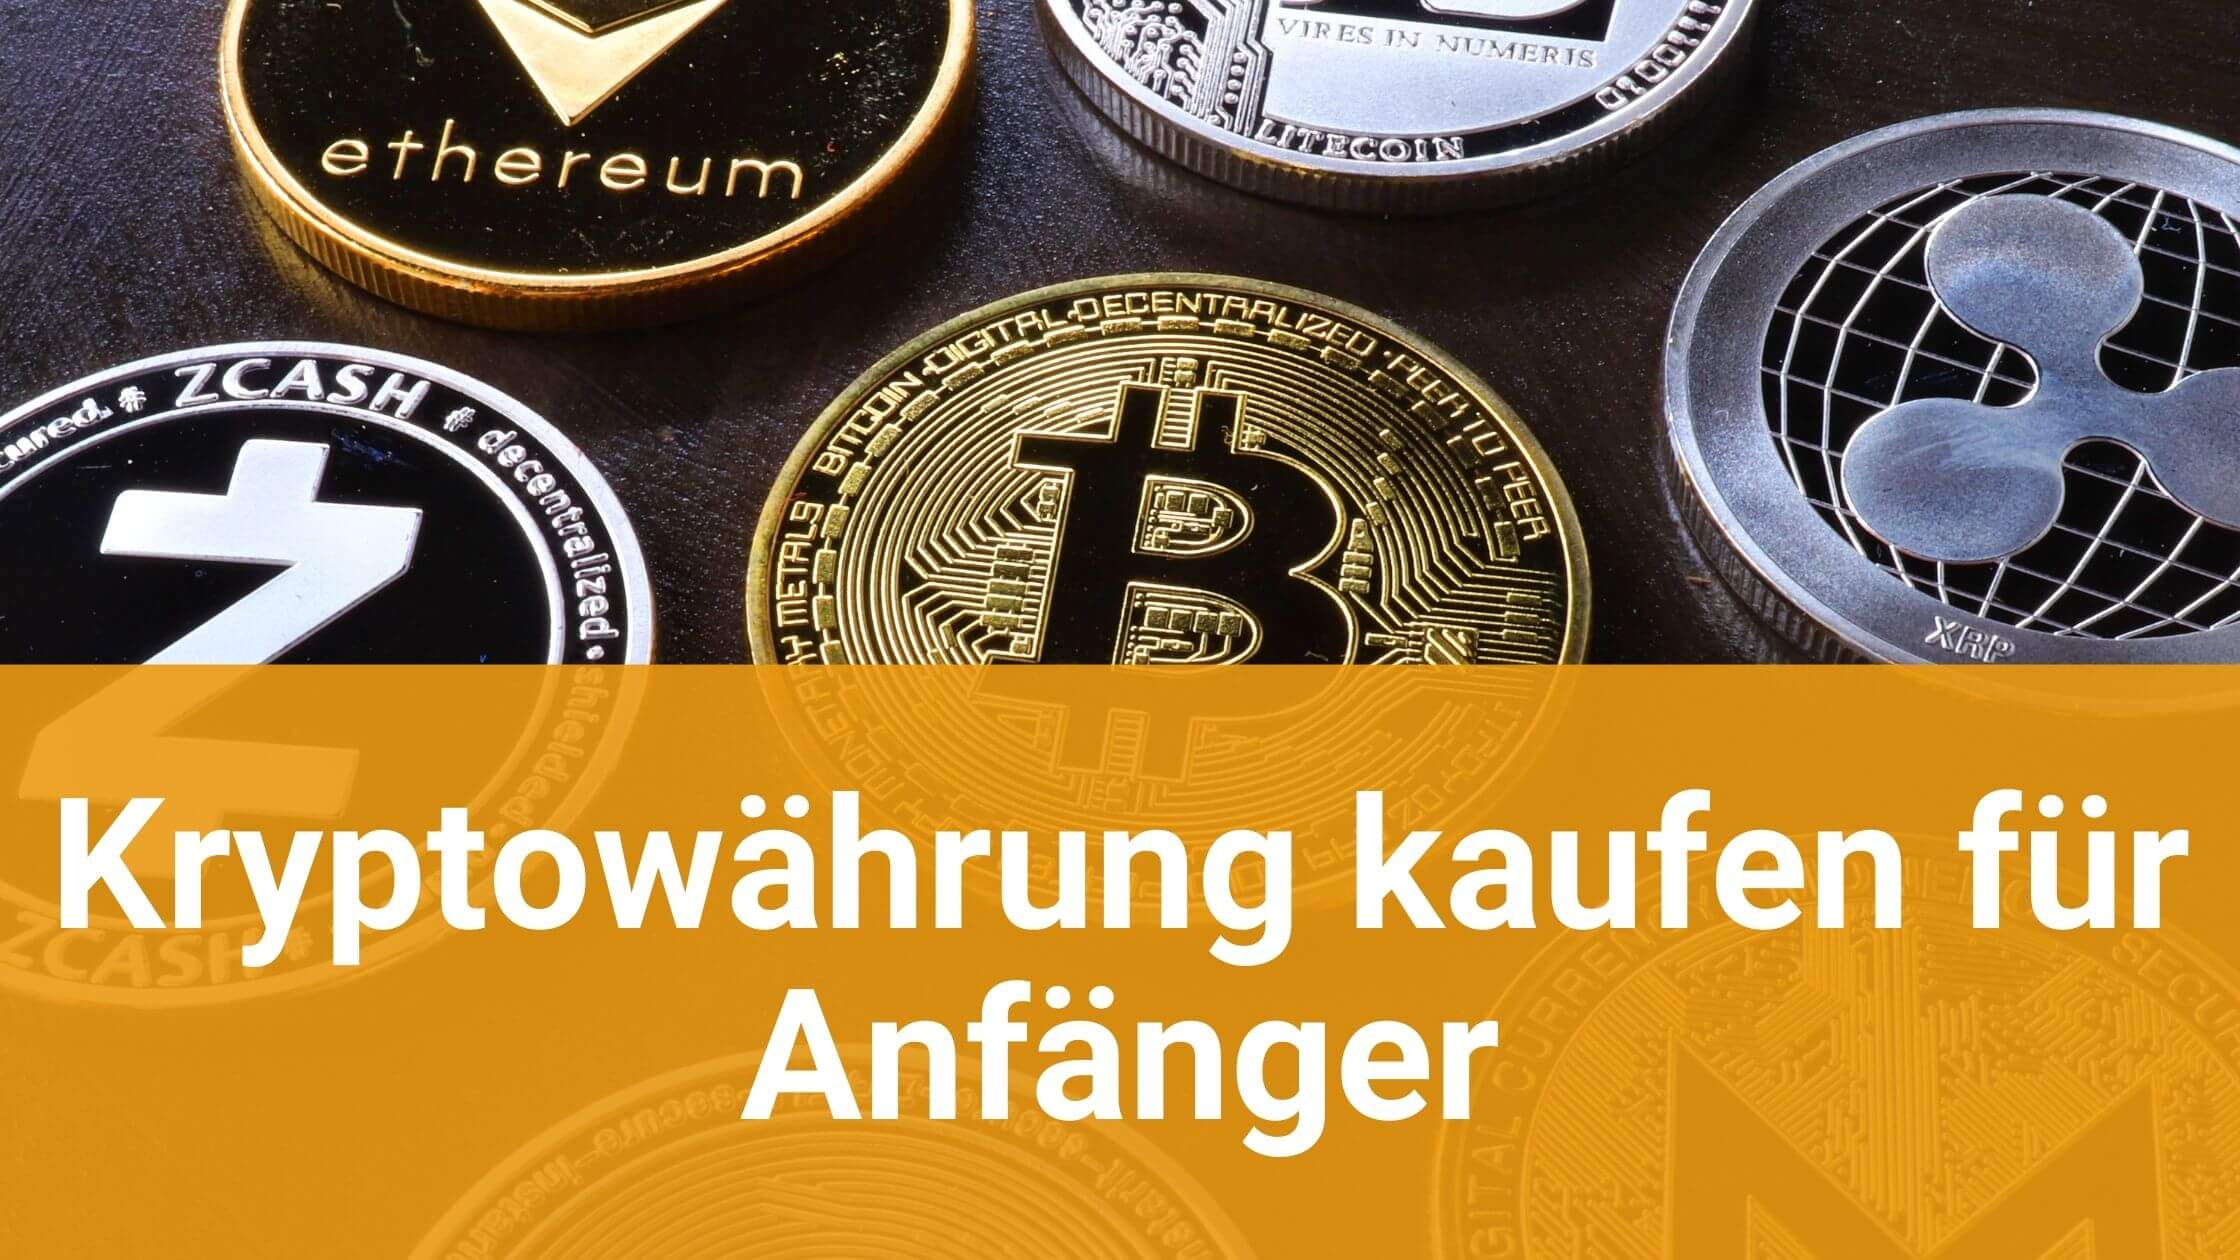 Kryptowährungen Kaufen Swissquote – Welche kryptowährung für anfänger?